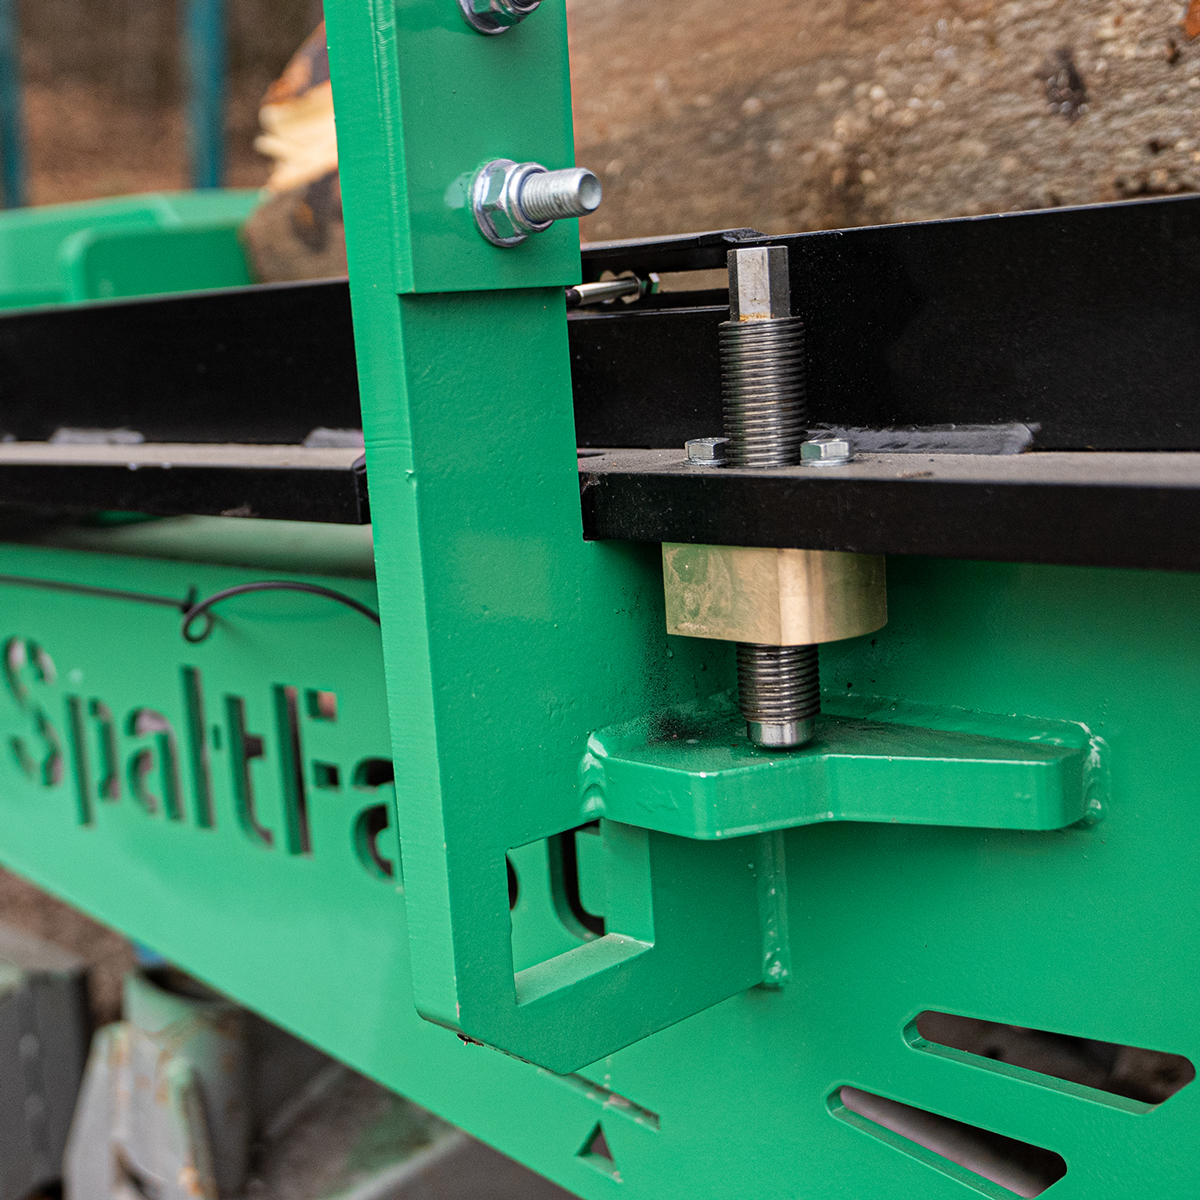 SpaltFast Lift Wood Splitter